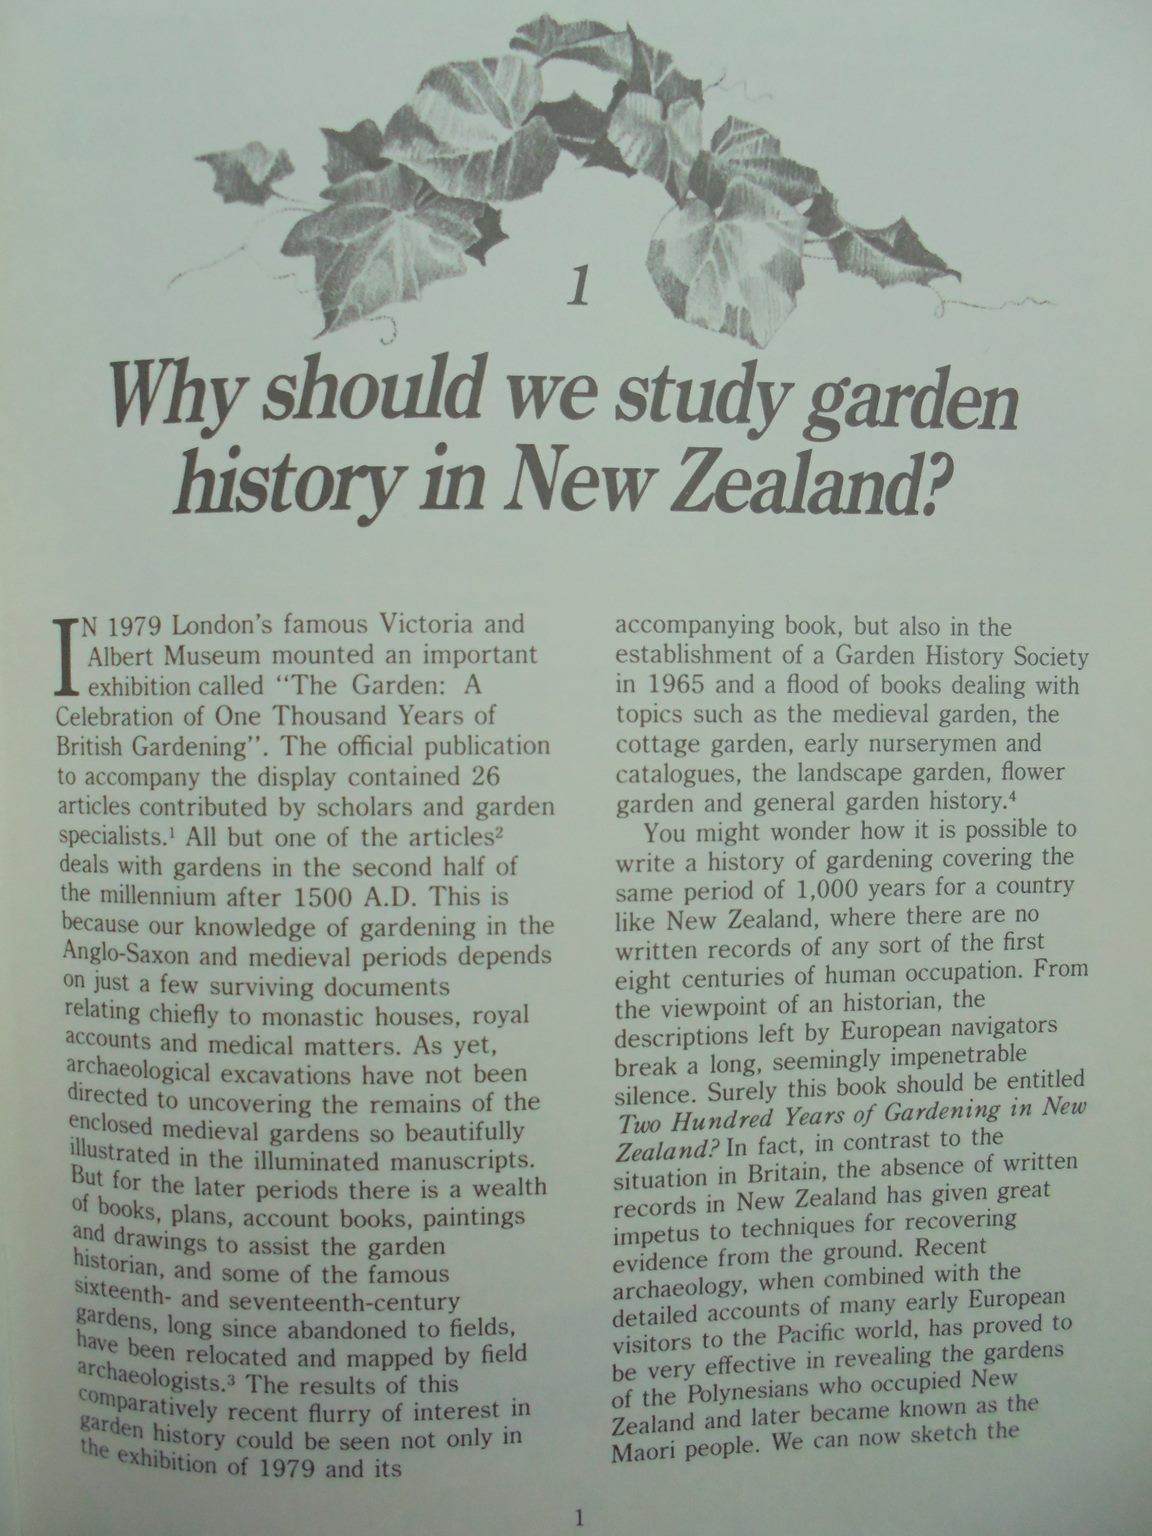 1,000 Years of Gardening in New Zealand. by Helen Leach